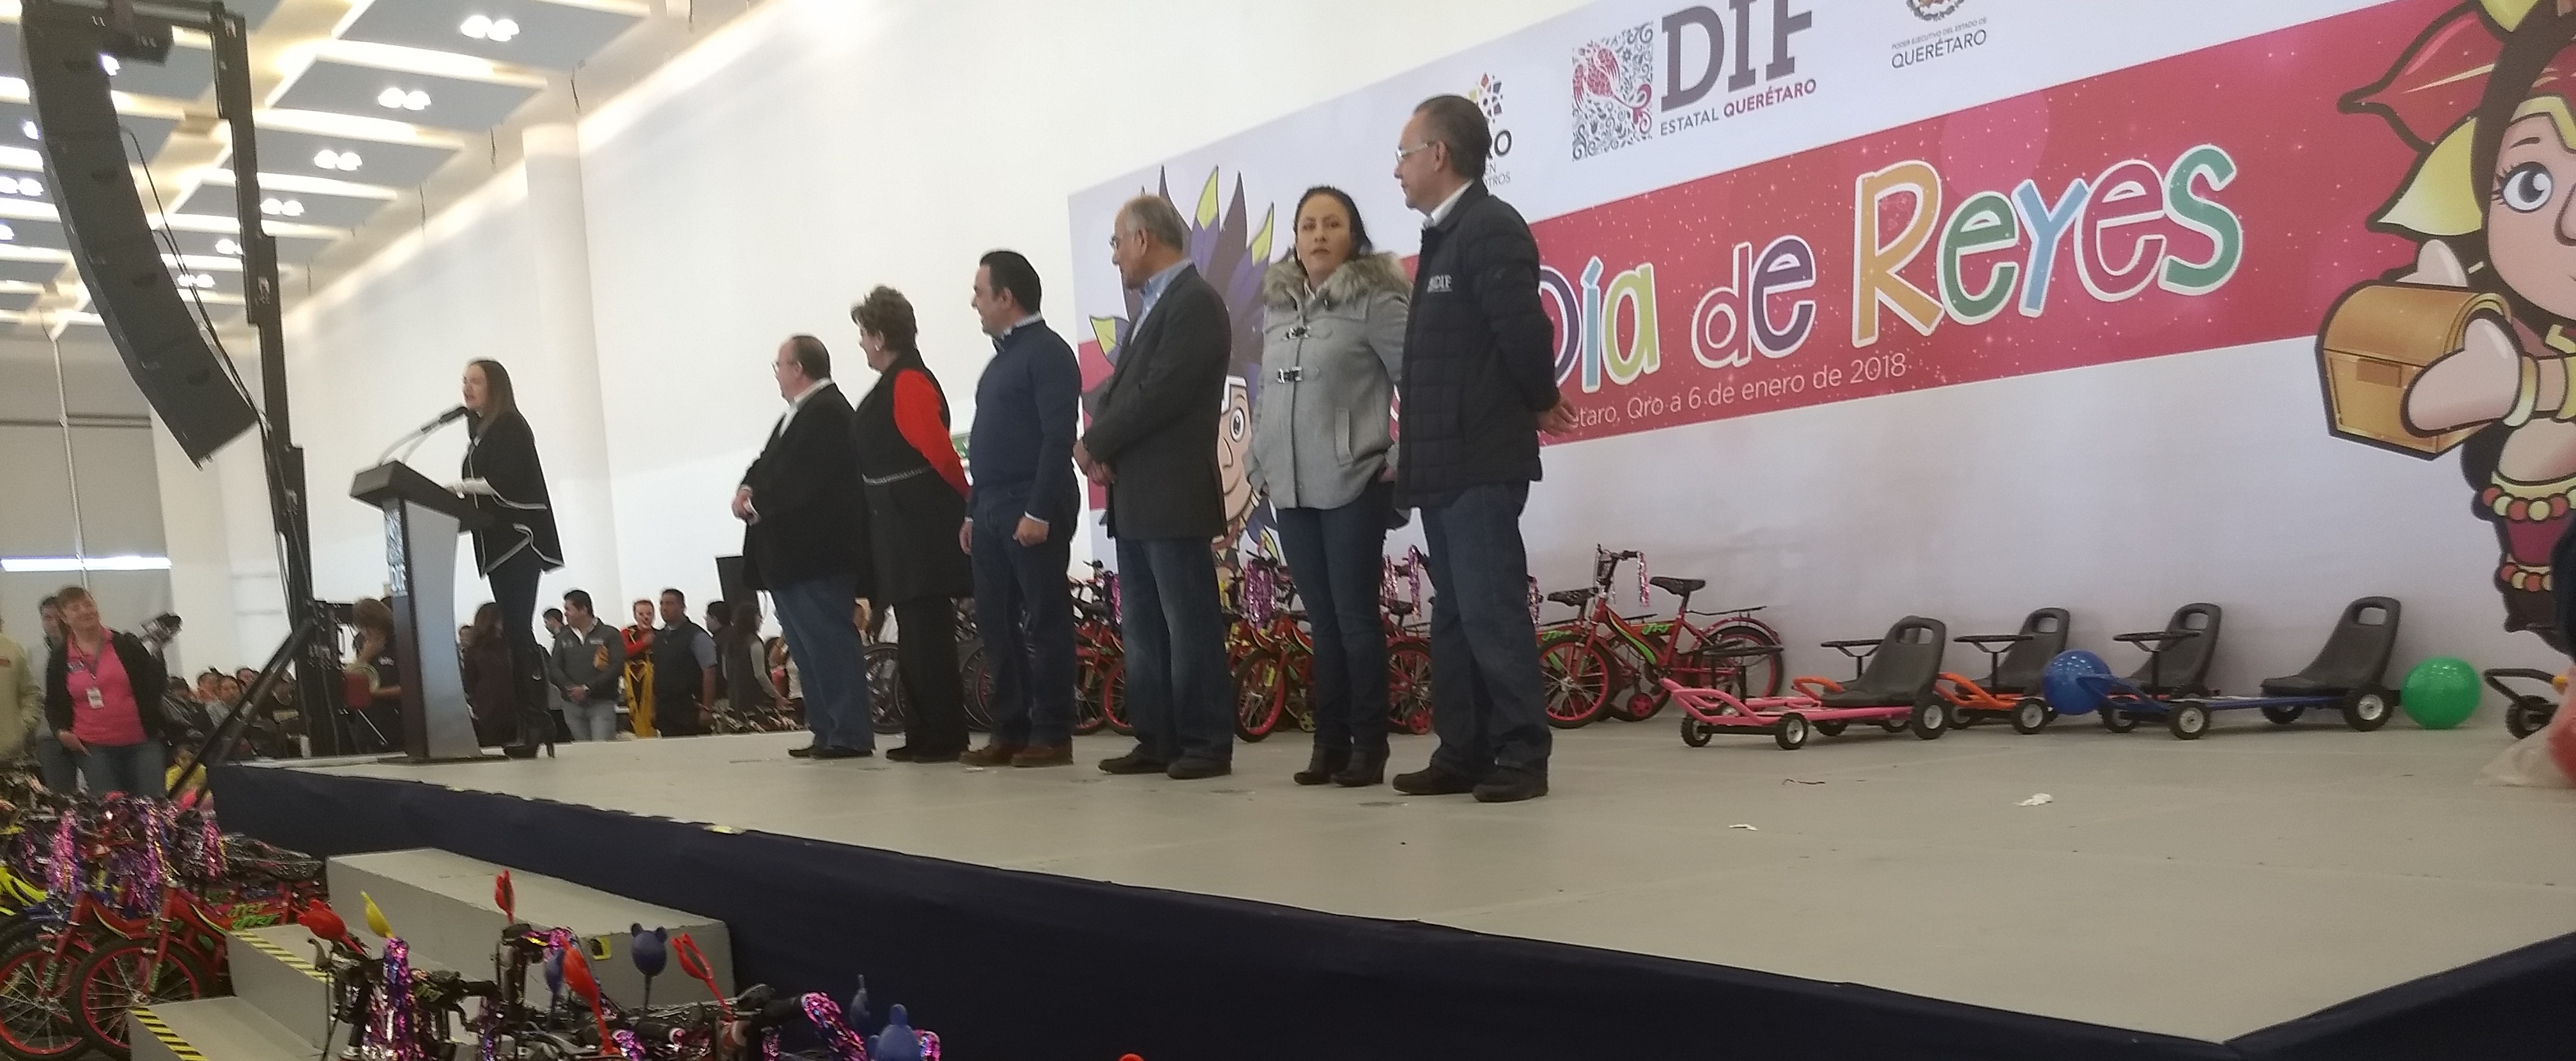  Payasos, juguetes y robots engalanan festejo de Día de Reyes en el Querétaro Centro de Congresos